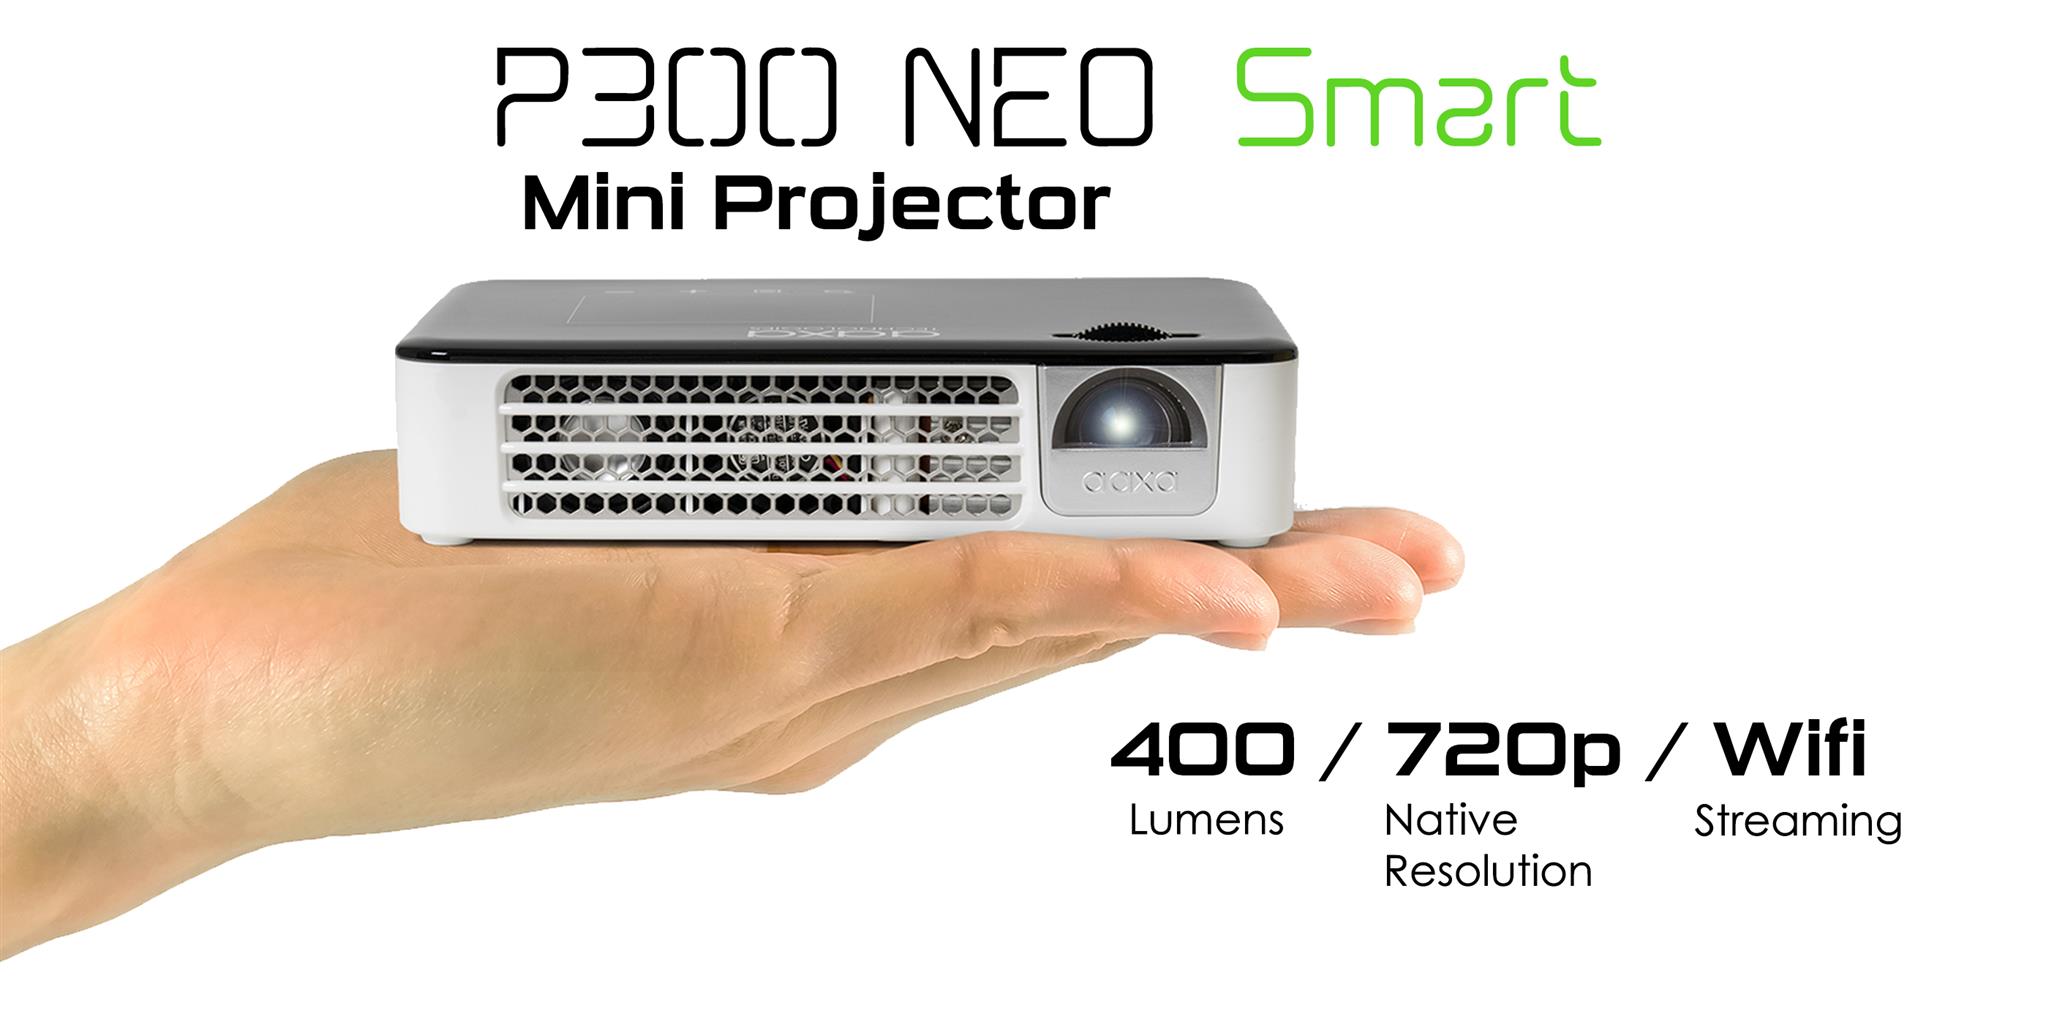 P300neo Smallest 400 Lumen Pico Projector